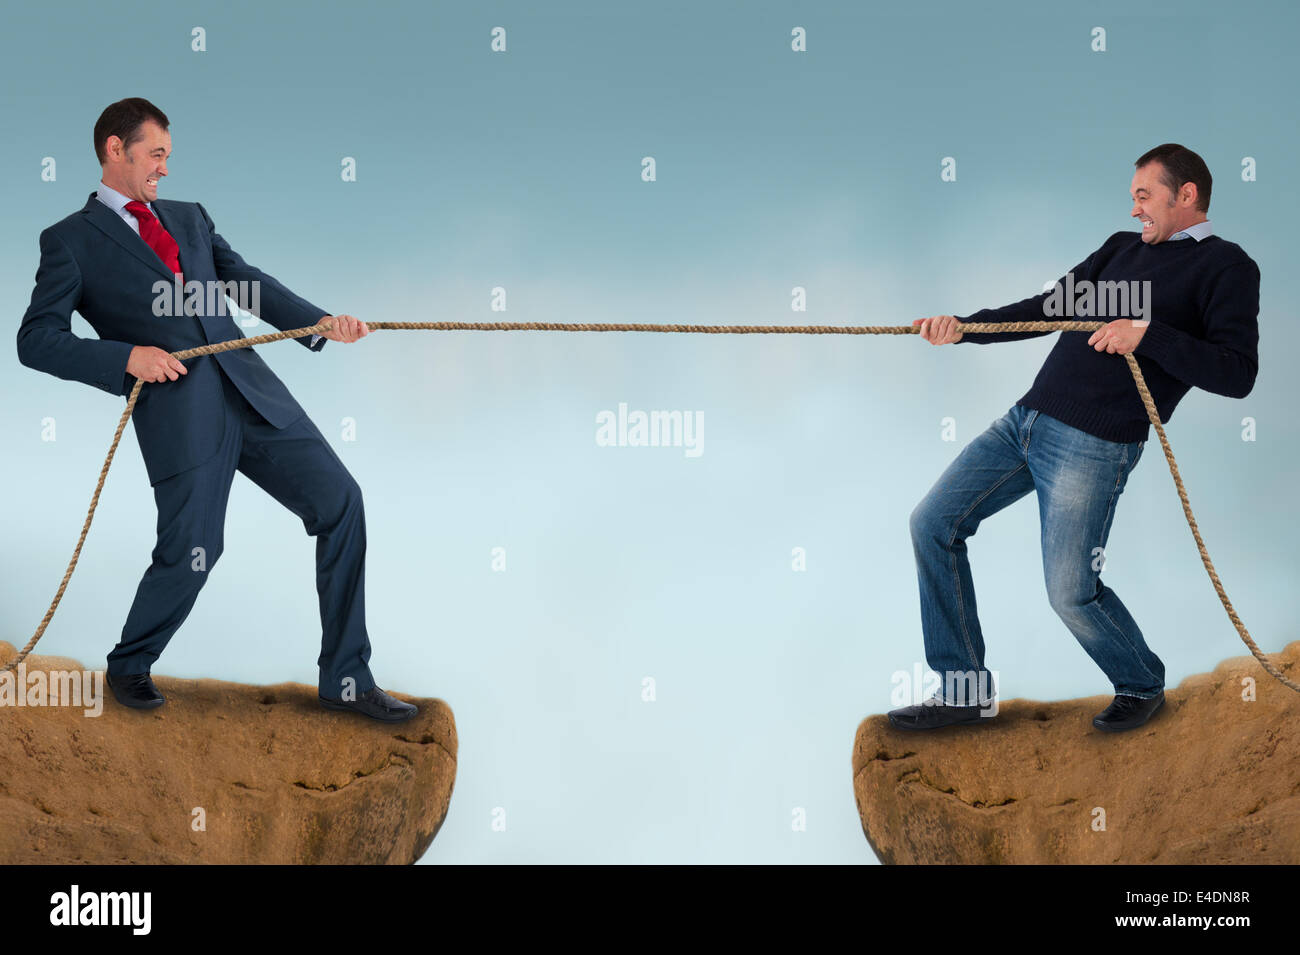 Tauziehen Männer ziehen Seil über eine Klippe oder Gletscherspalte - Arbeit-Leben-Balance-Konzept Stockfoto